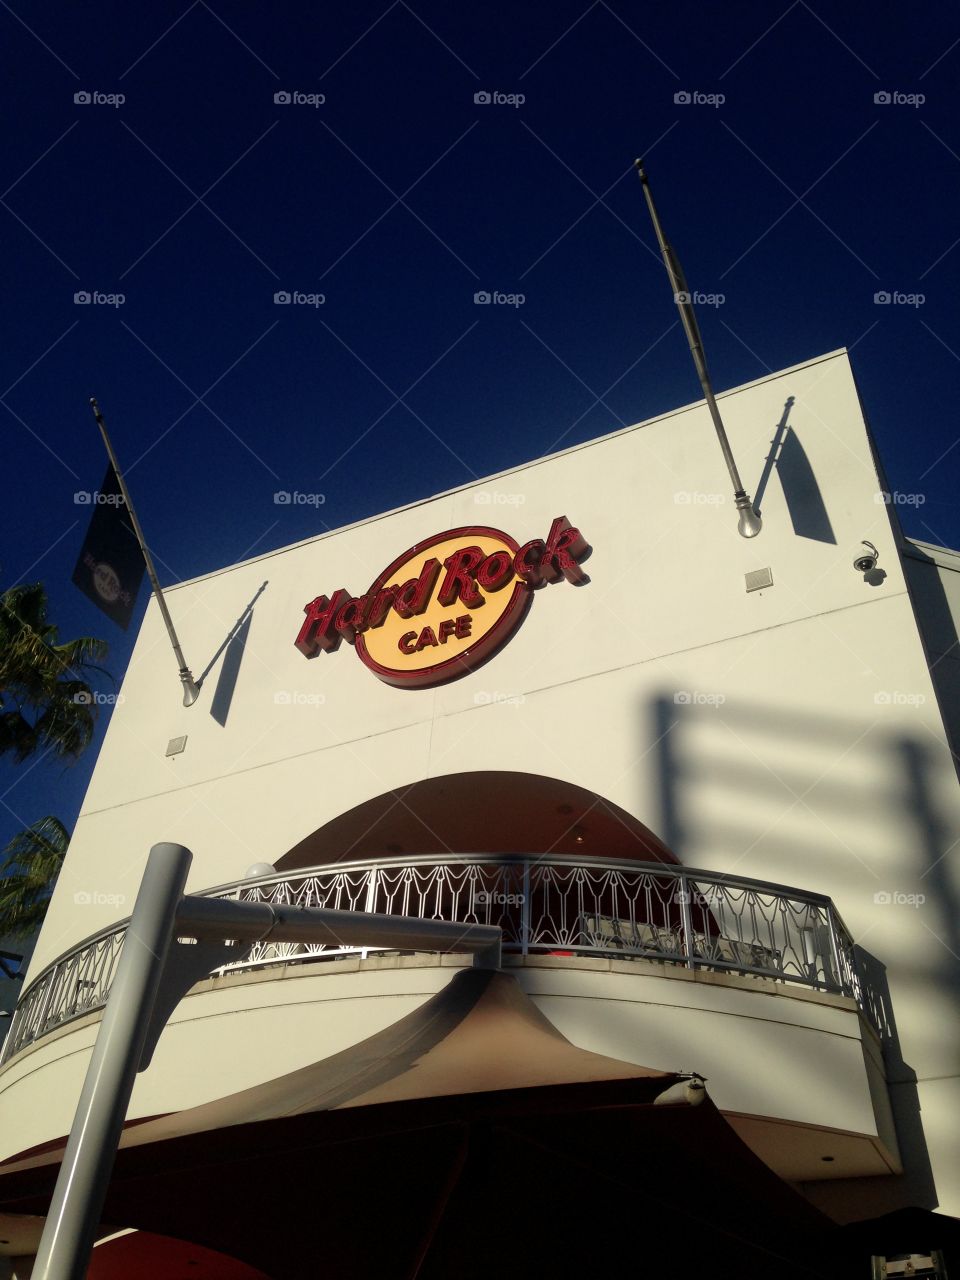 The Hard Rock Café at Universal City Walk - May 2015.